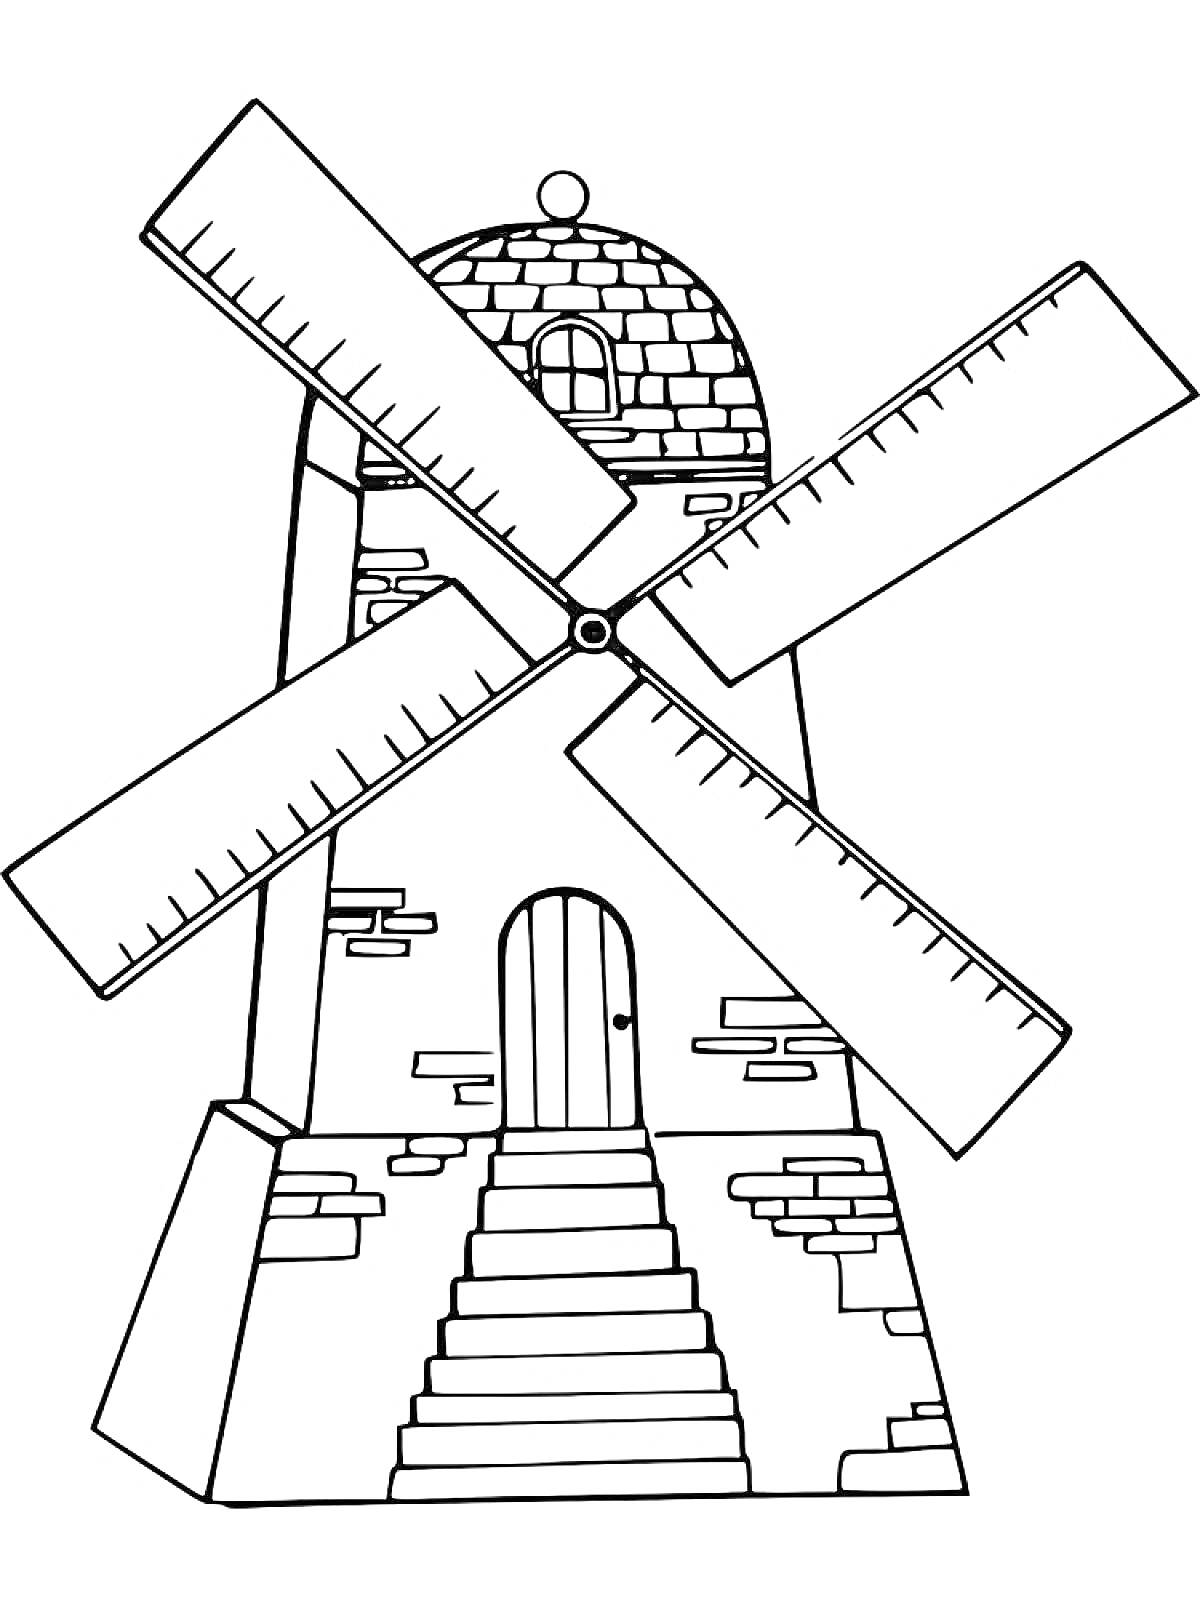 Мельница с каменной кладкой, дверью с арочным верхом, лестницей и четырьмя лопастями